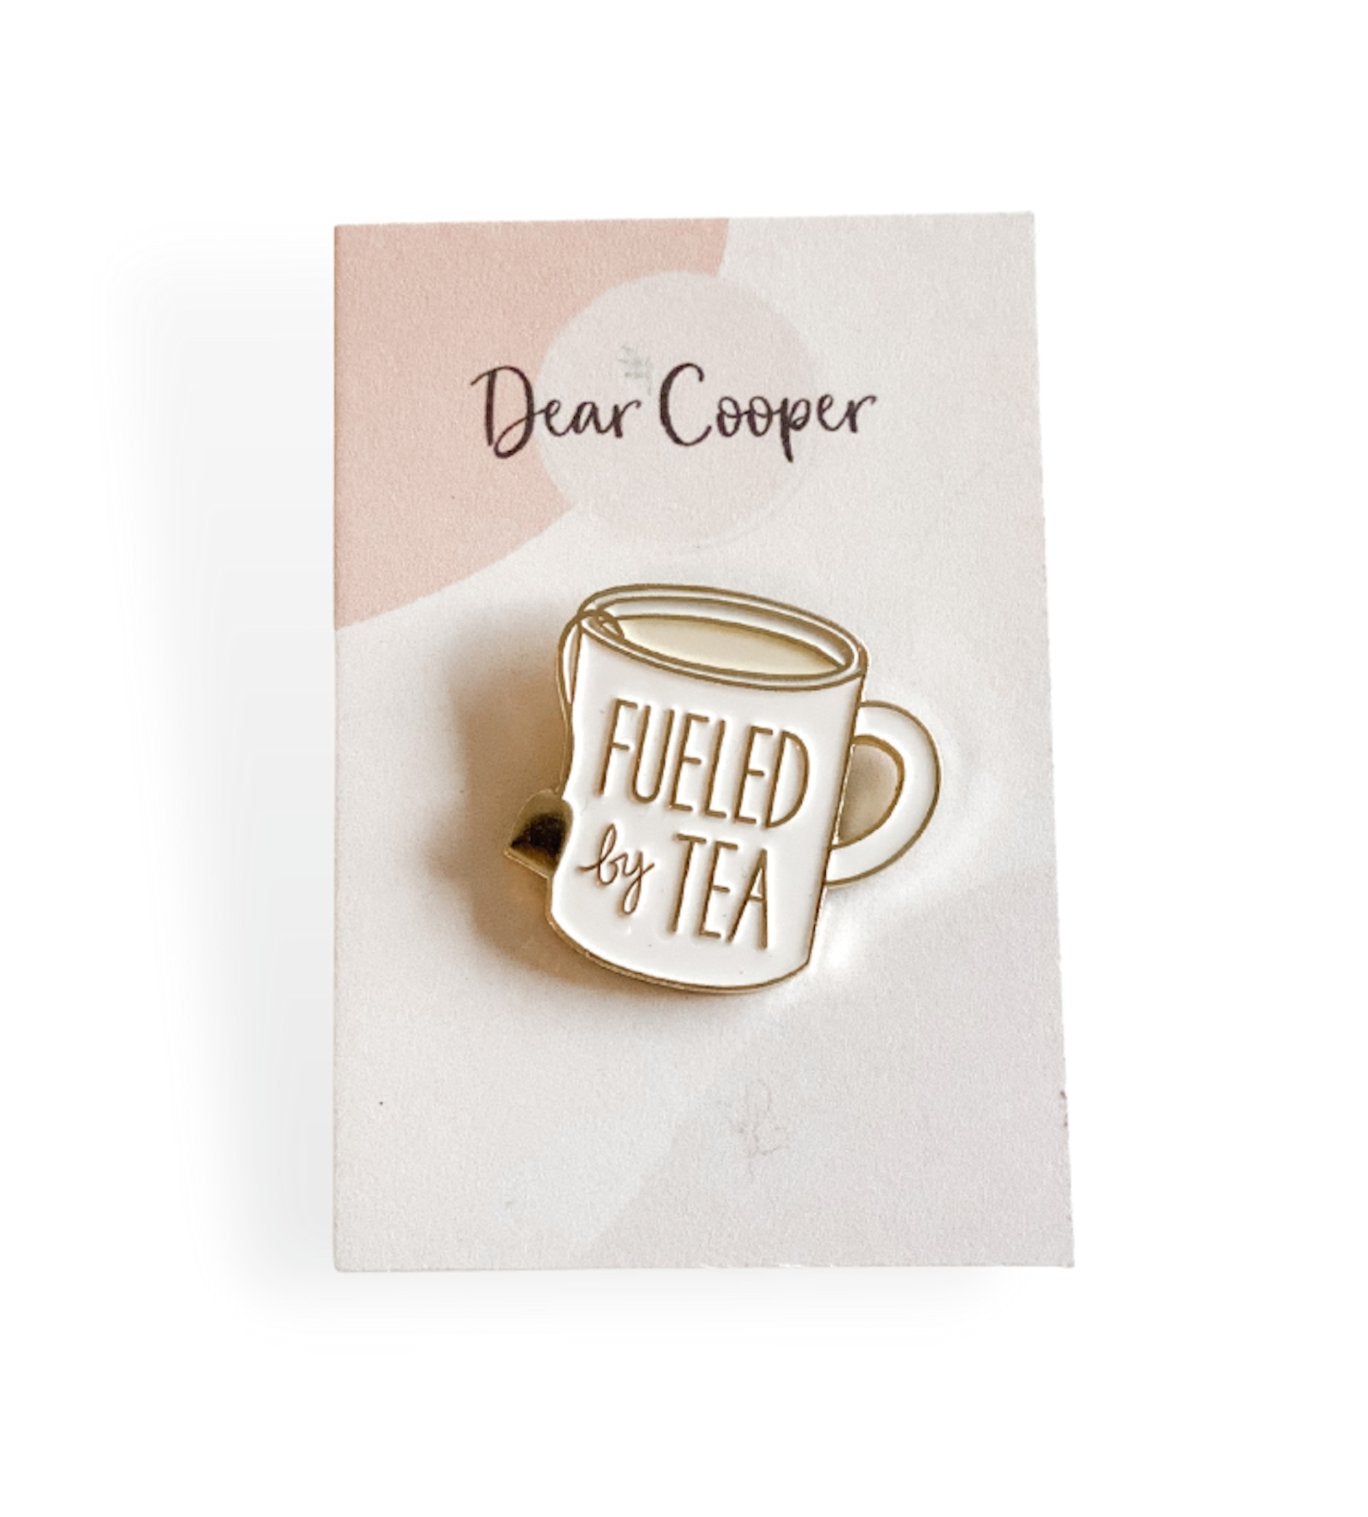 "Fueled by Tea" enamel pin - Dear Cooper